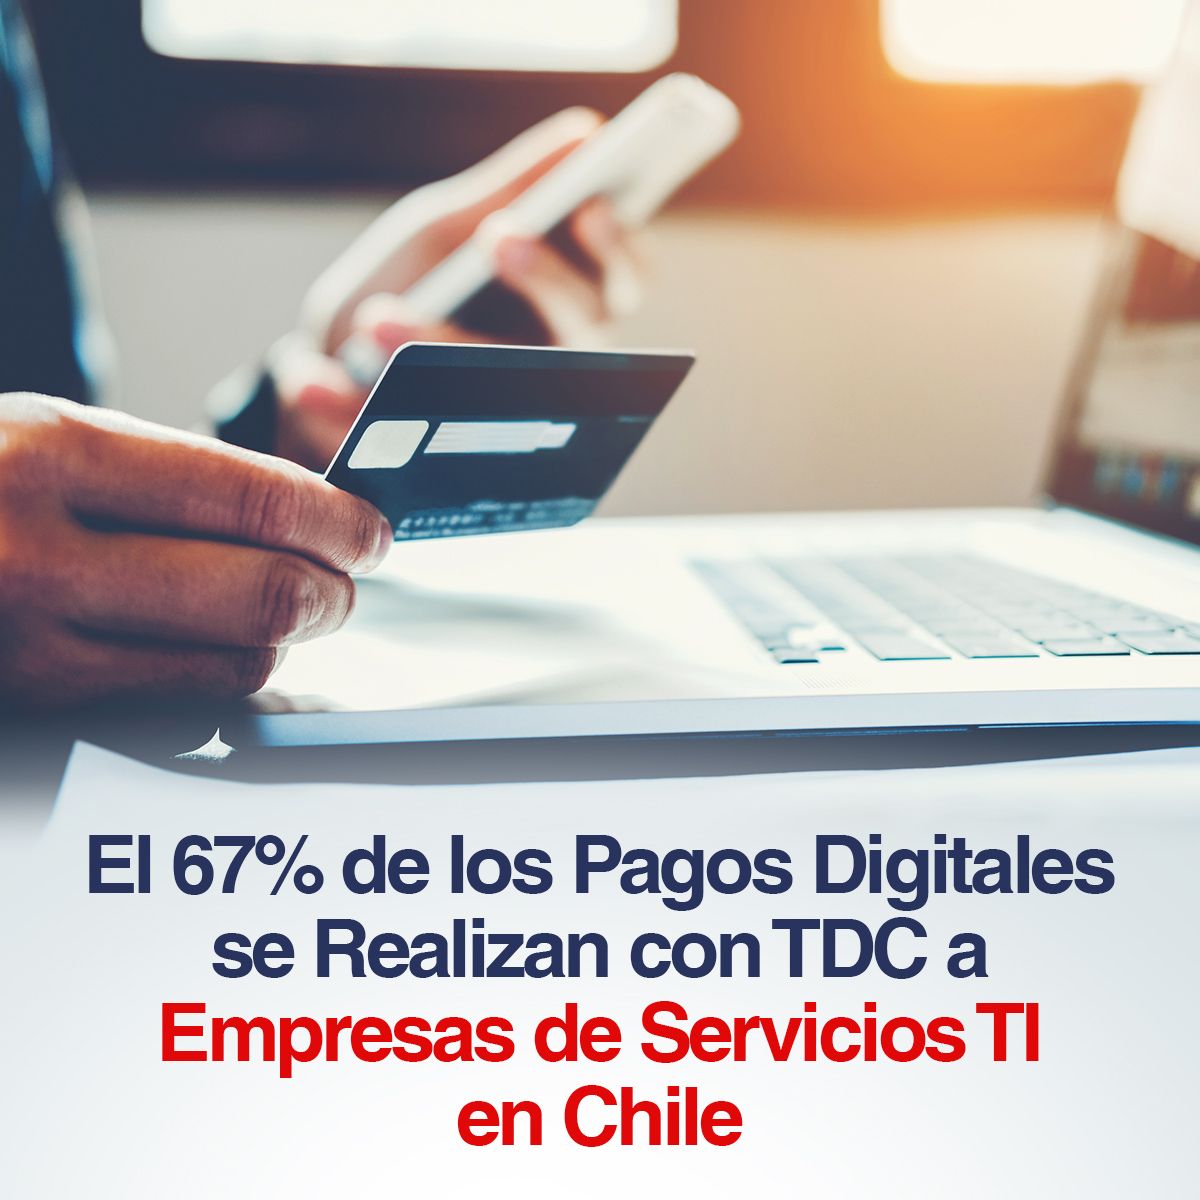 El 67% de los Pagos Digitales se Realizan con TDC a Empresas de Servicios TI en Chile